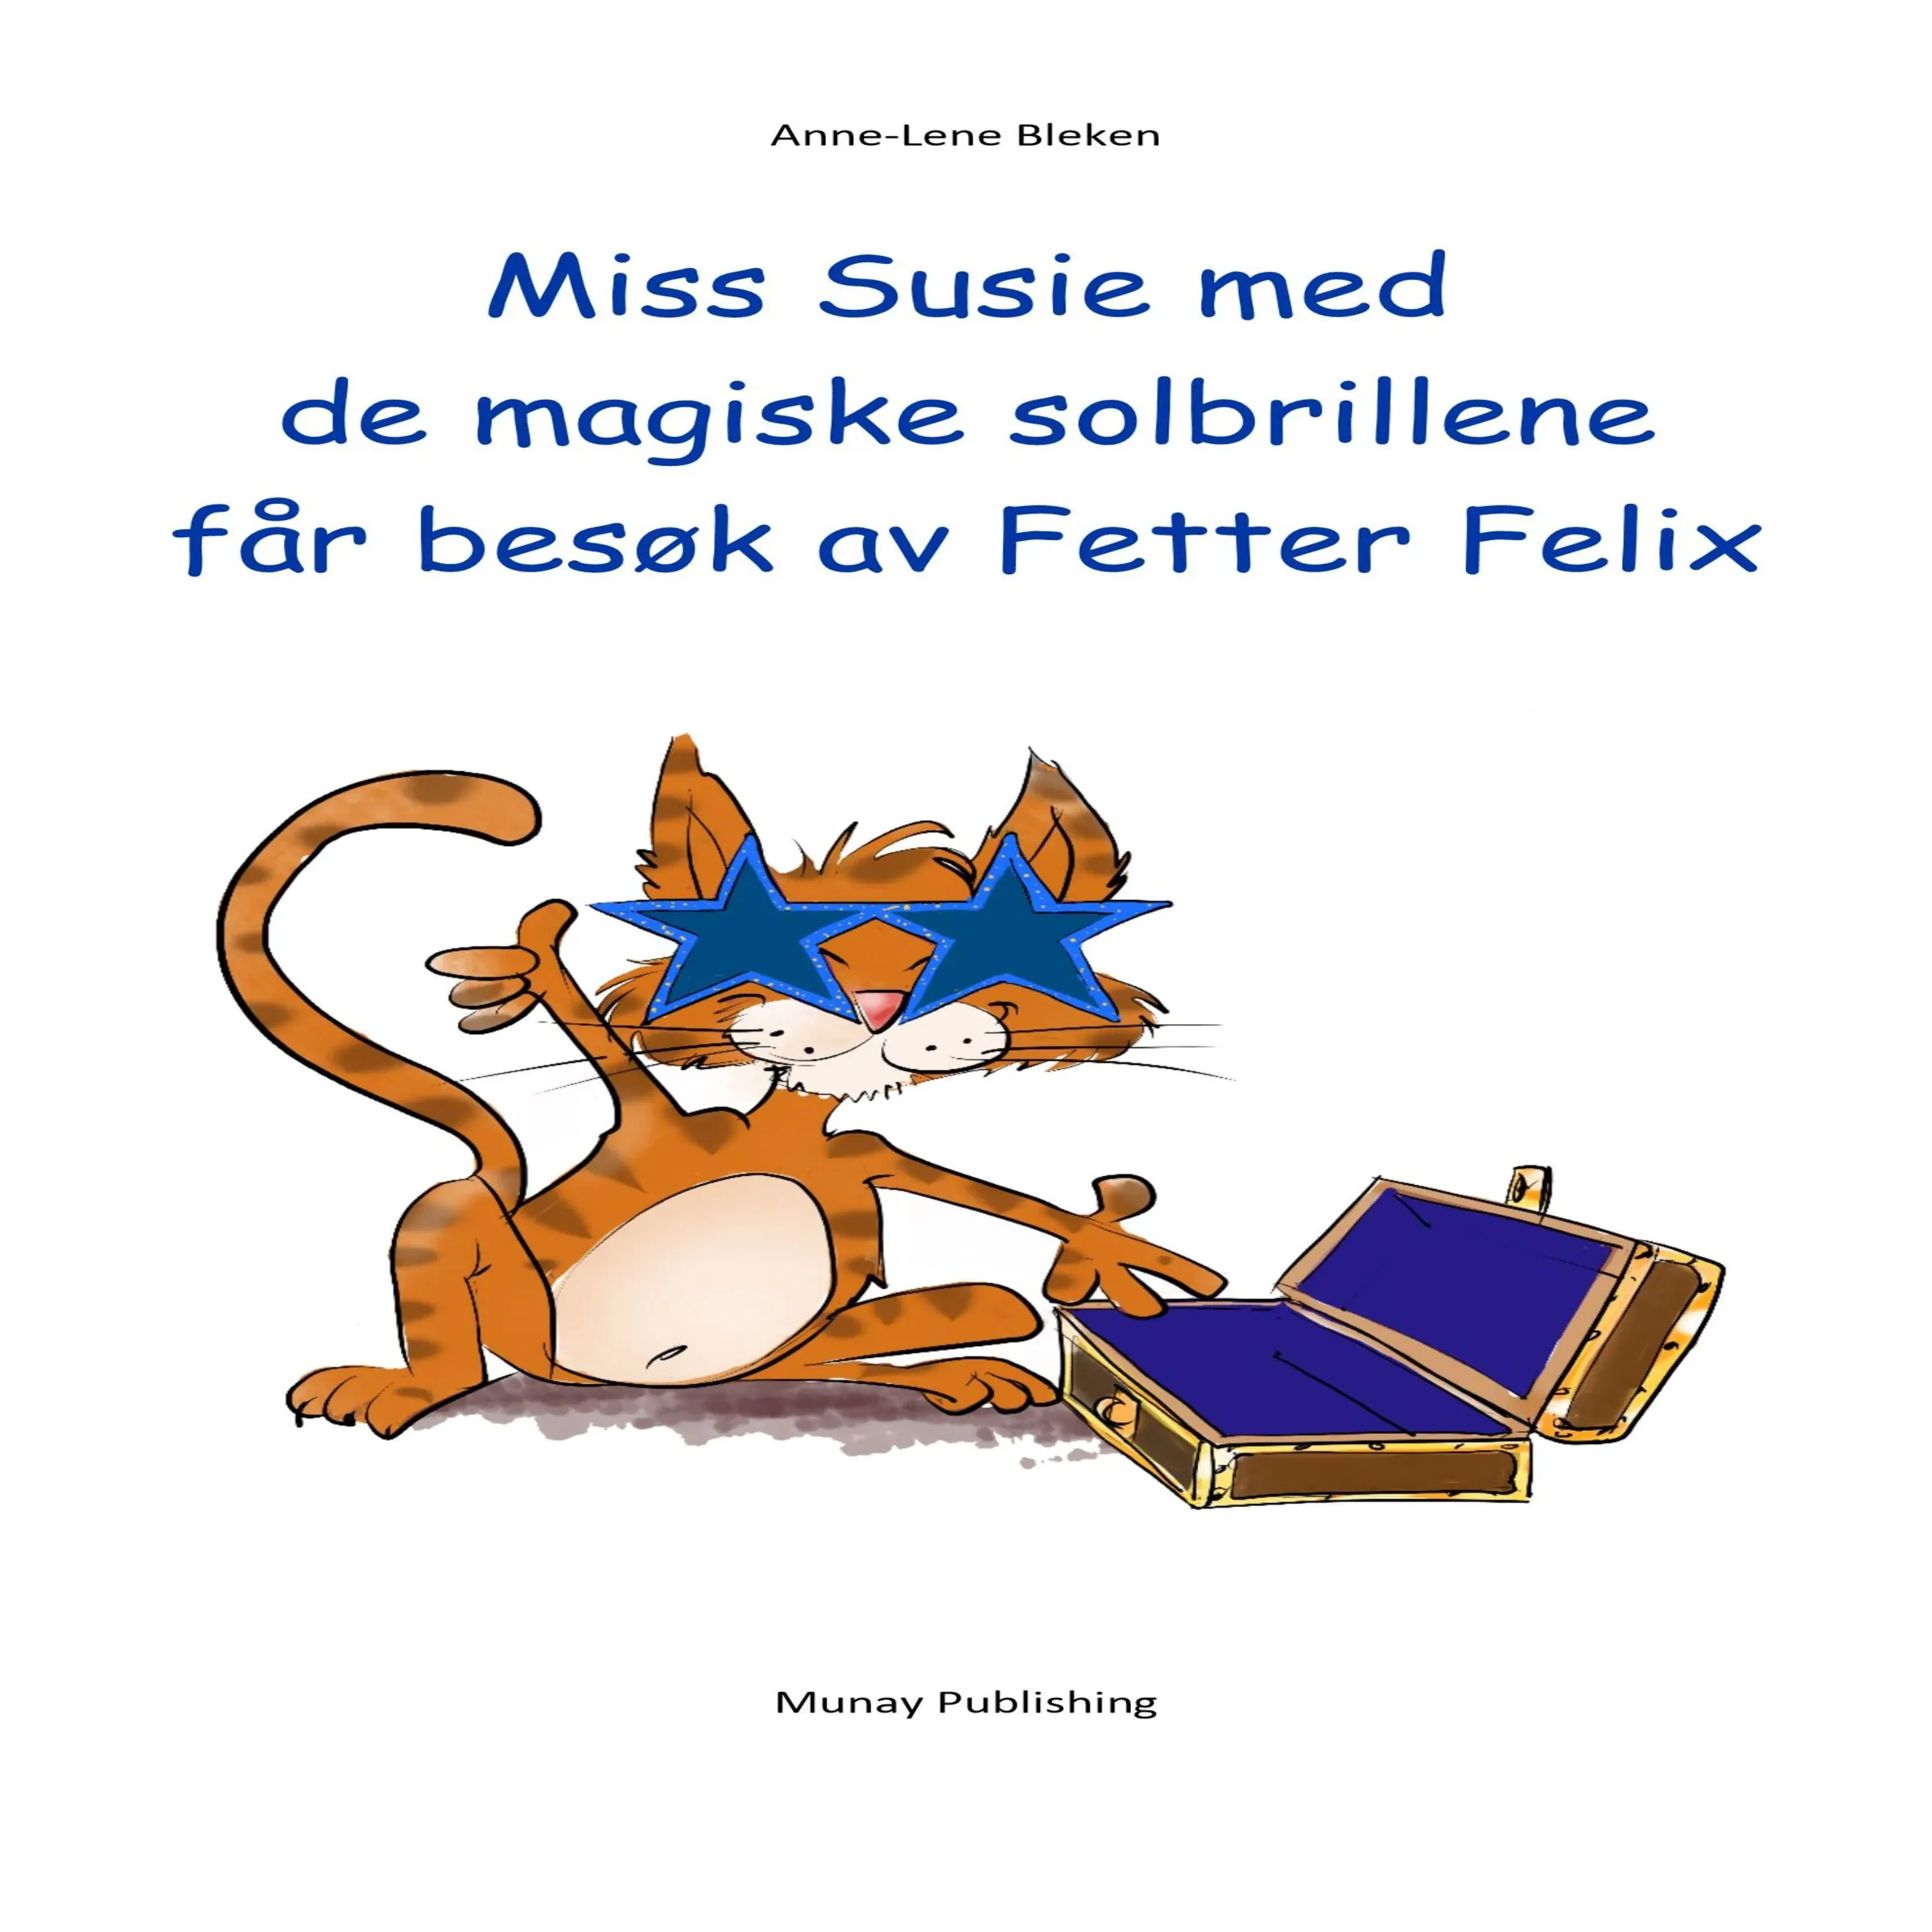 Miss Susie med de magiske solbrillene får besøk av Fetter Felix Audiobook by Anne-Lene Bleken